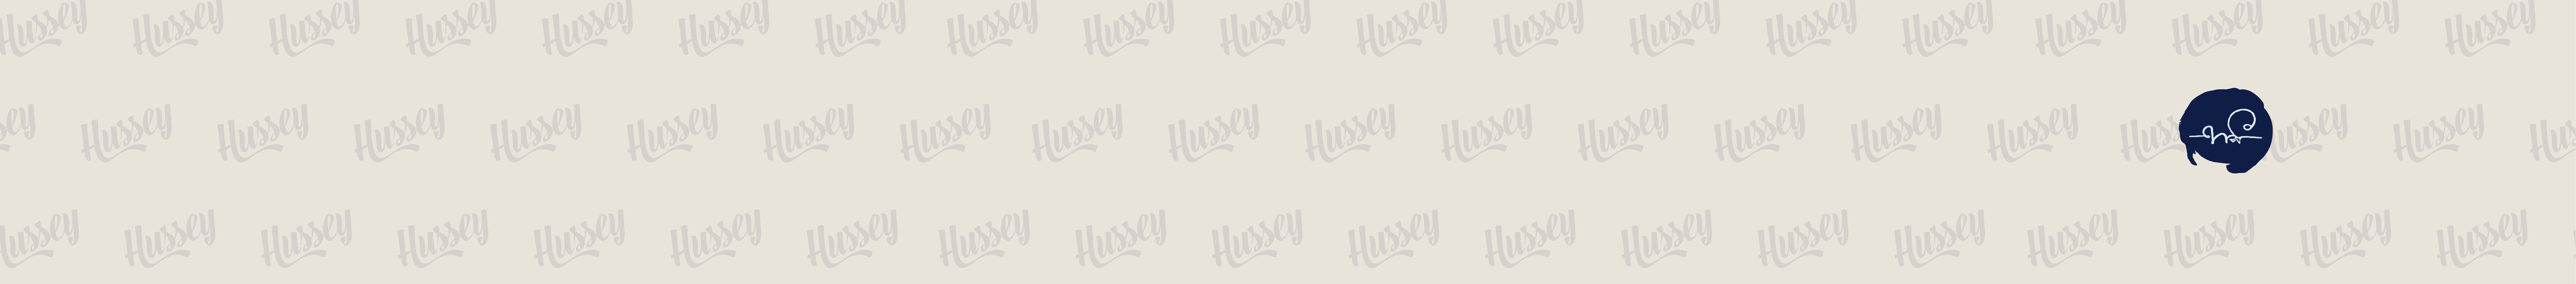 HUSSEY 380 profil başlığı